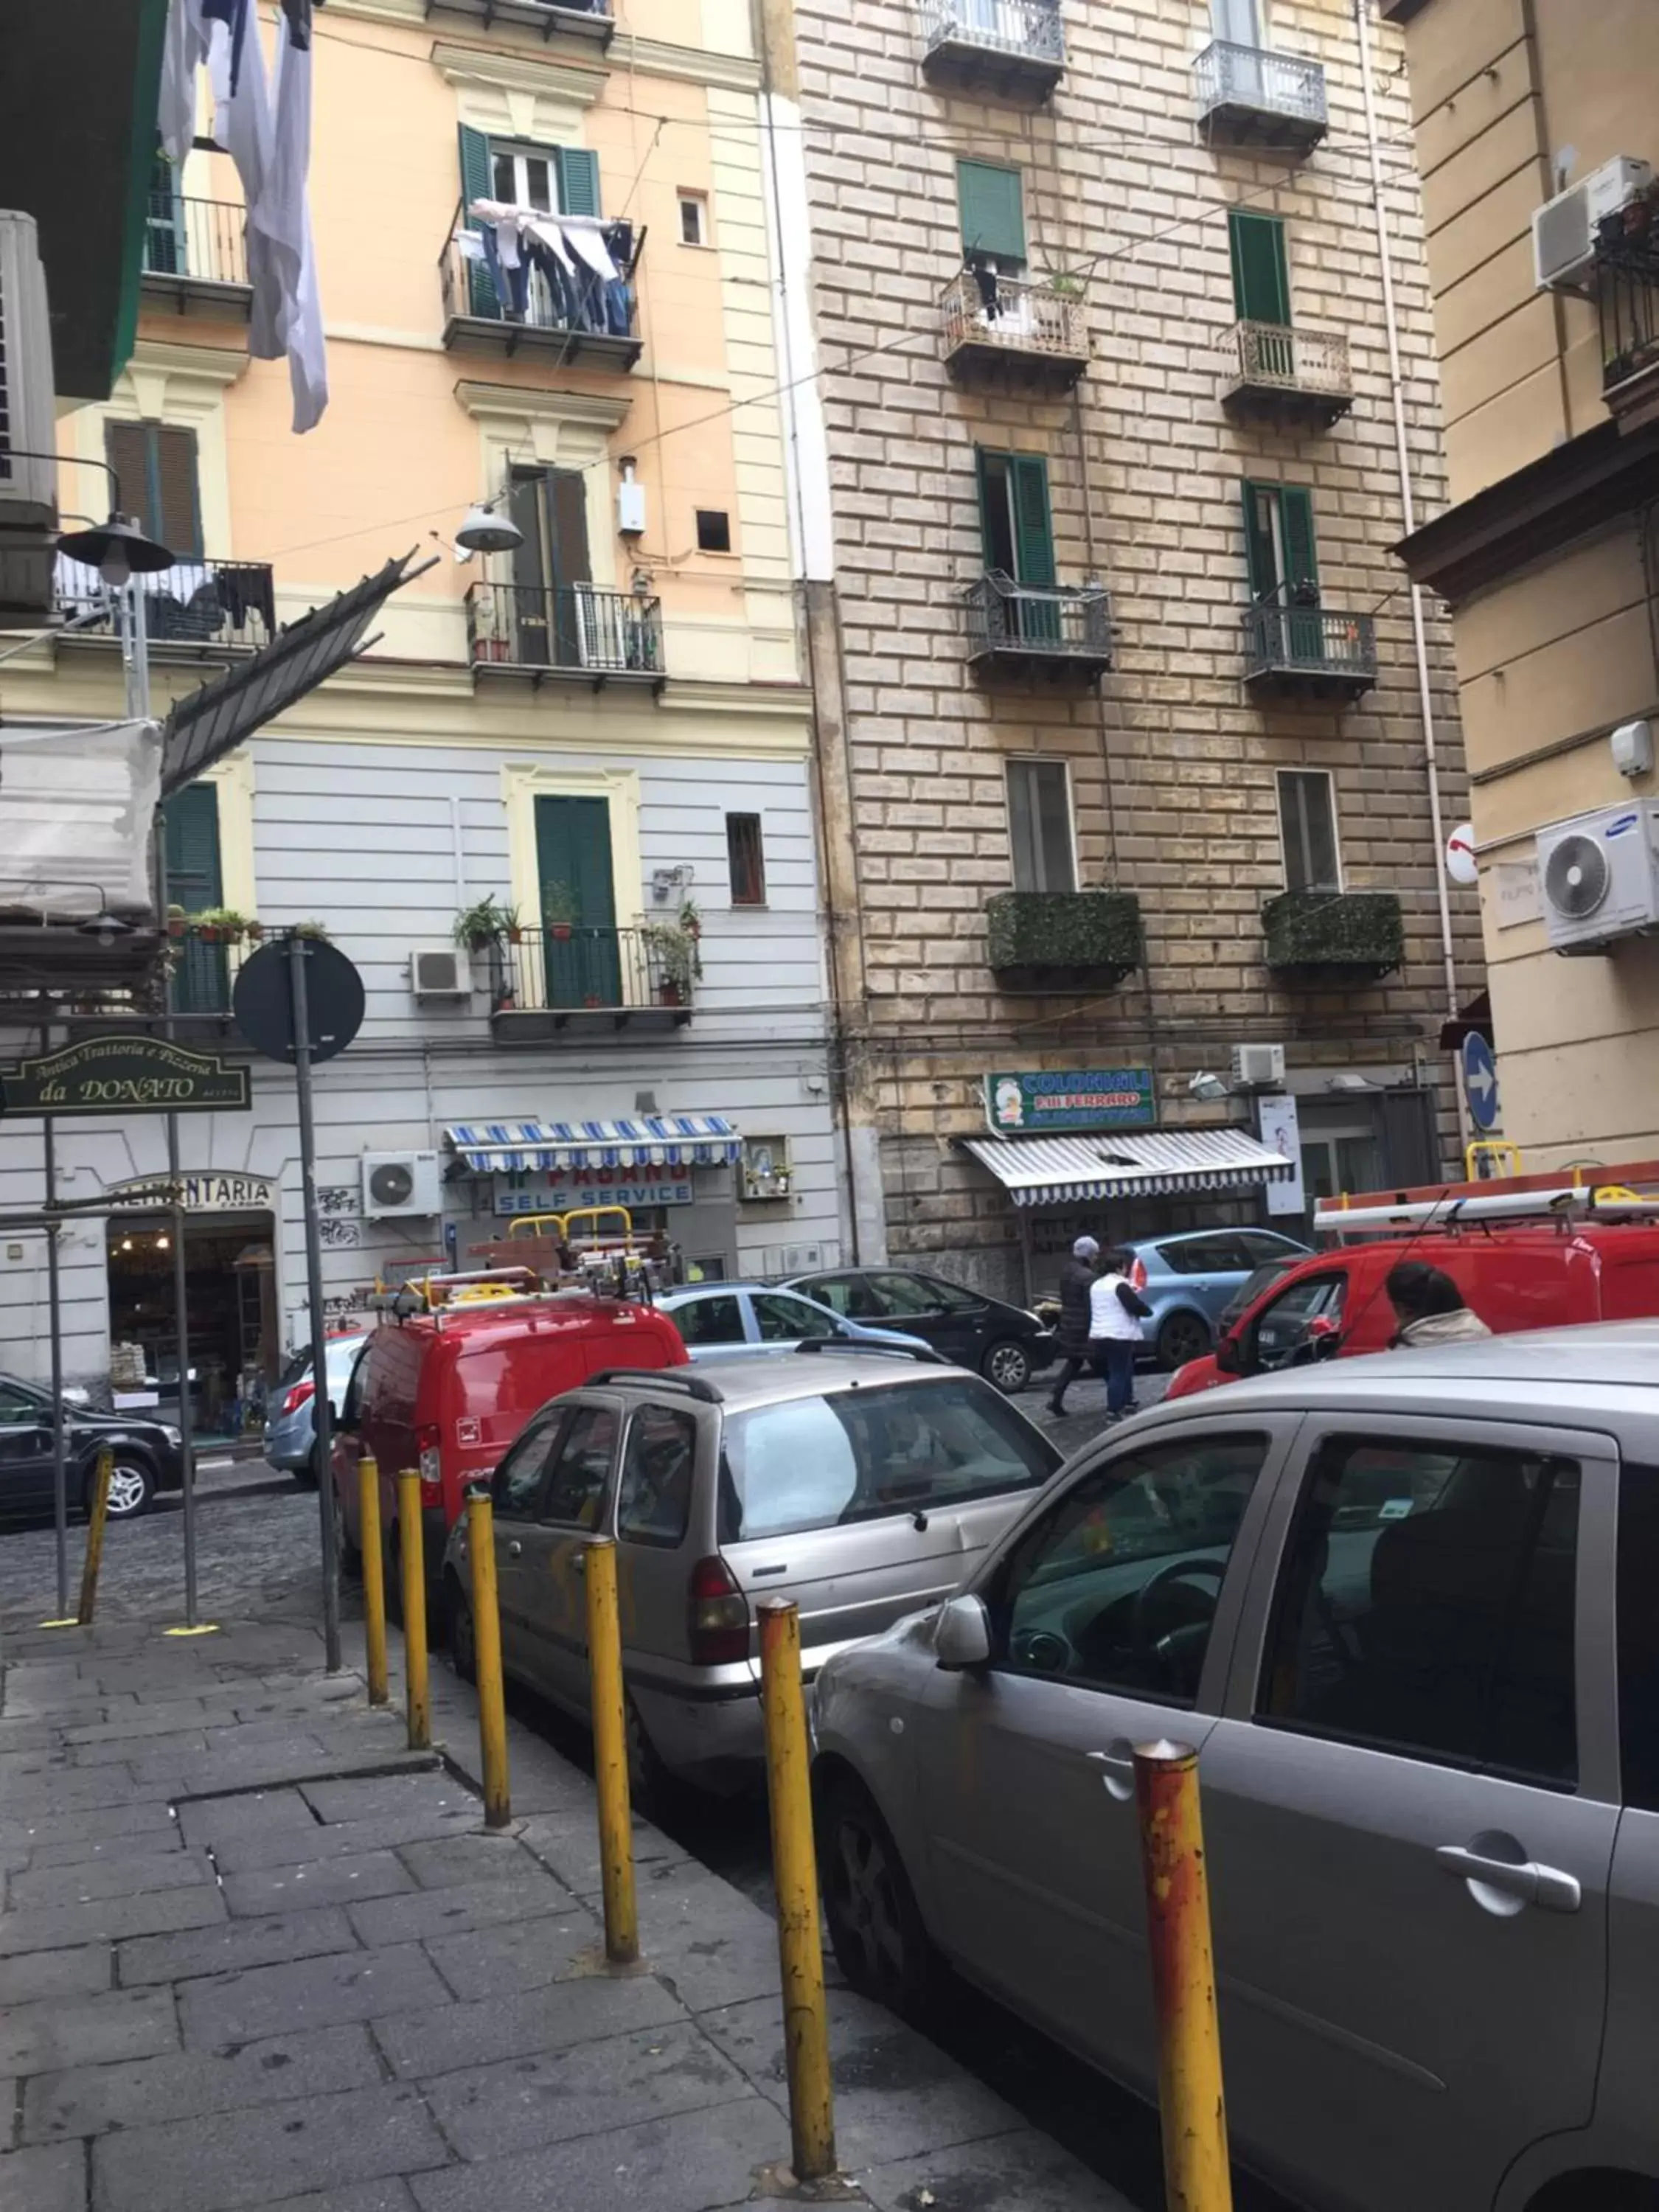 Property building in Le Perle di Napoli